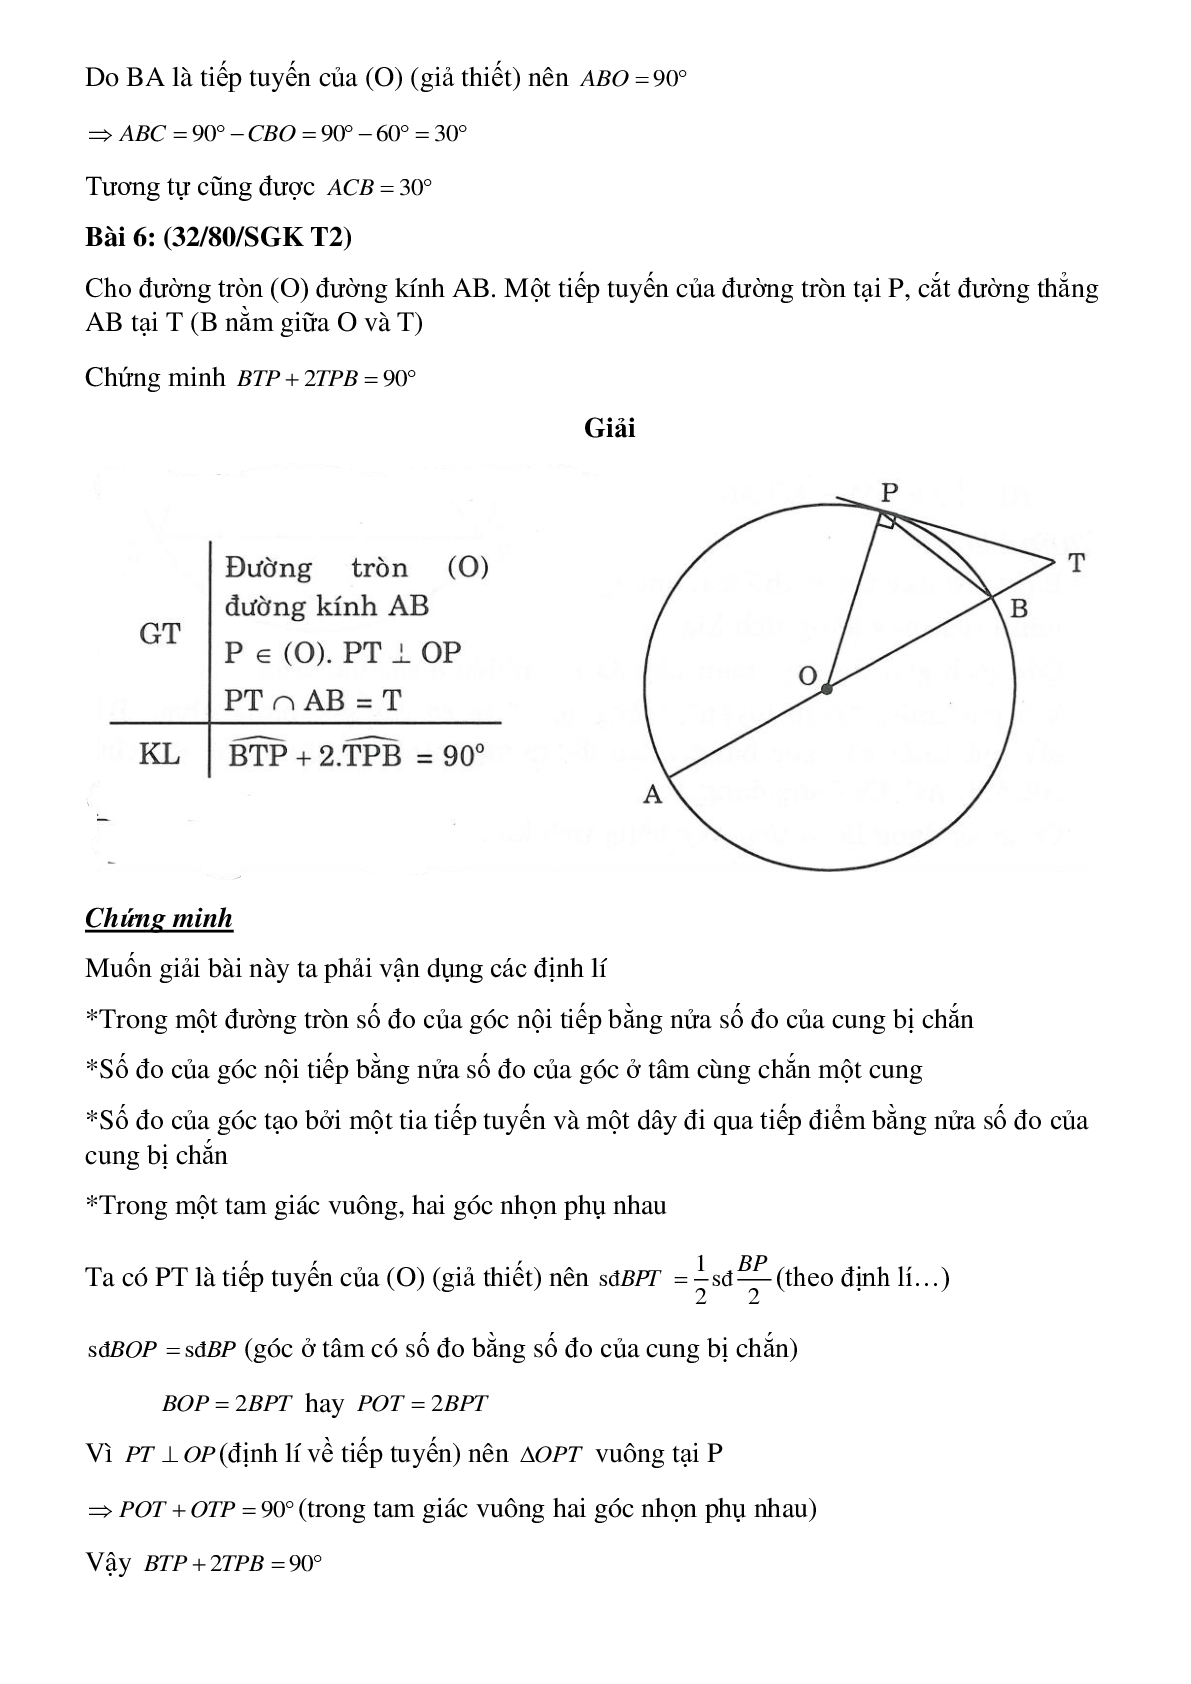 Lý thuyết, bài tập Góc tạo bởi tiếp tuyến và dây cung đầy đủ có lời giải (trang 8)